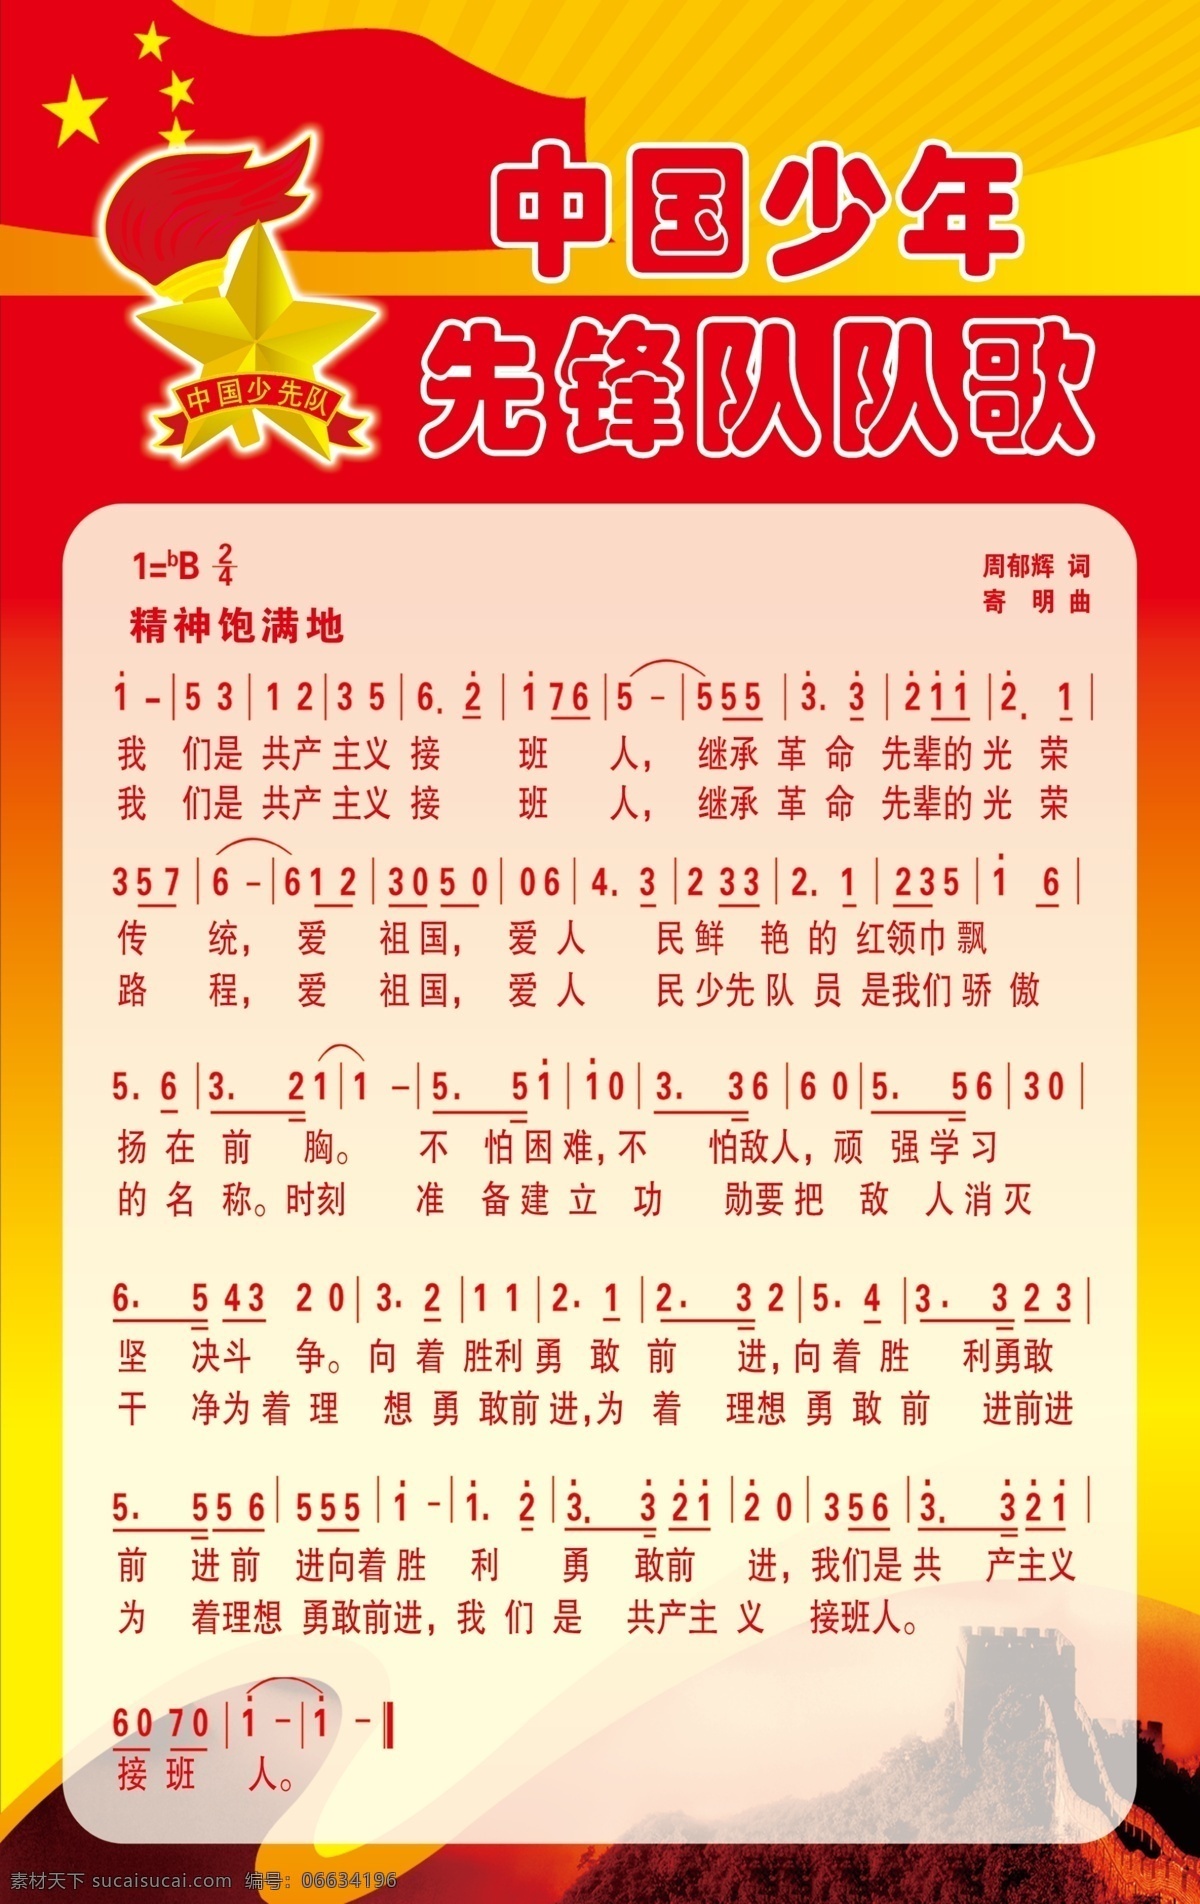 中国少年先锋队 队歌 队 徽 长城 红色背景 歌谱 分层 源文件